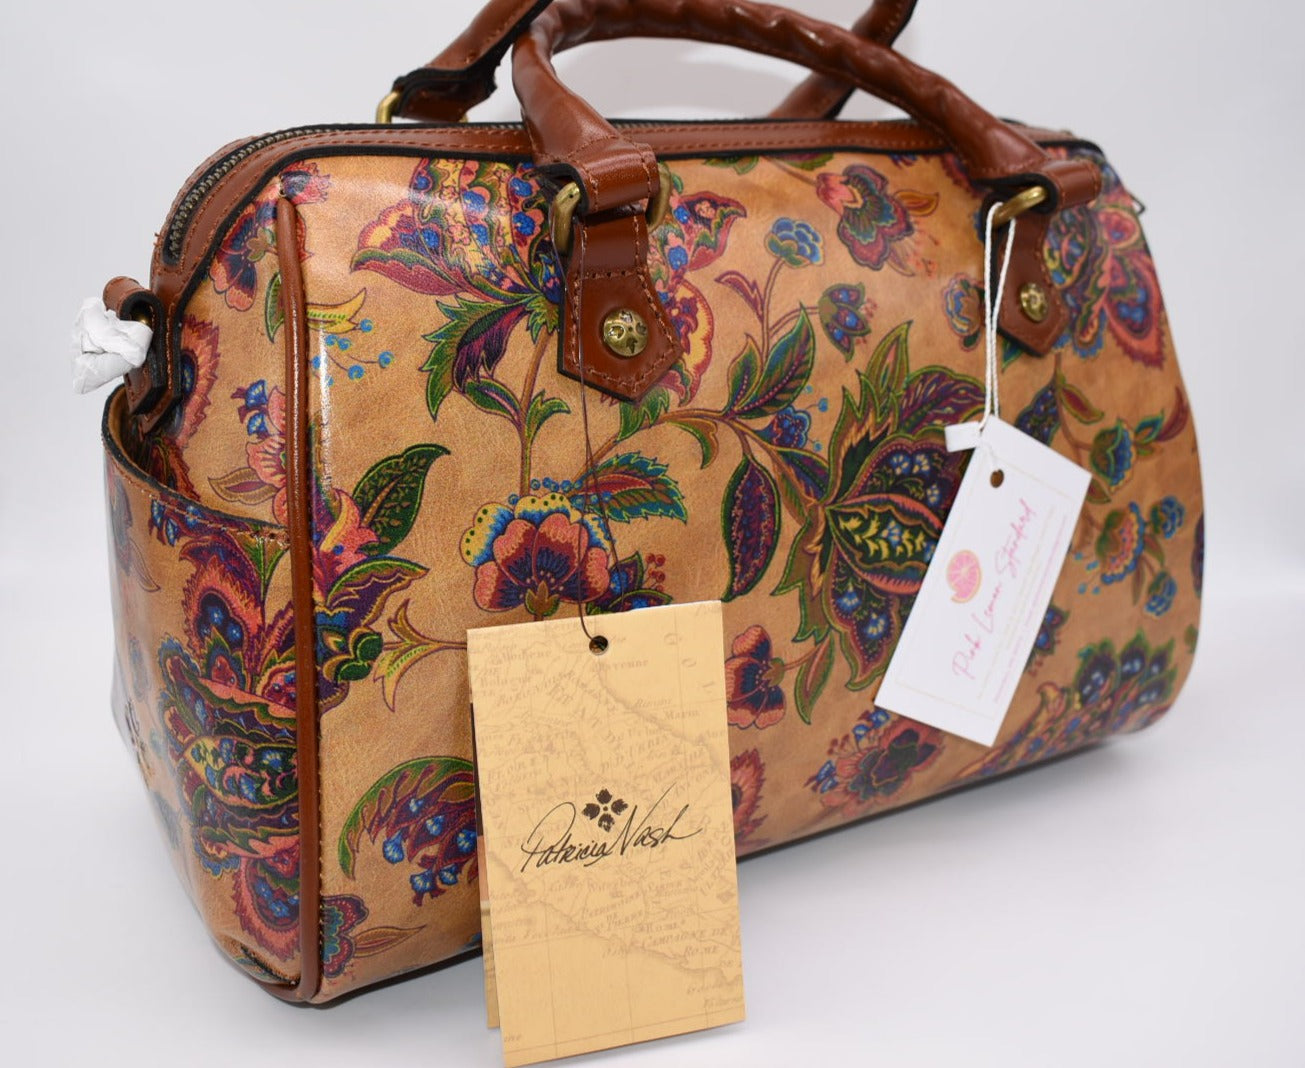 Patricia Nash Skye Satchel Bag in French Tapestry